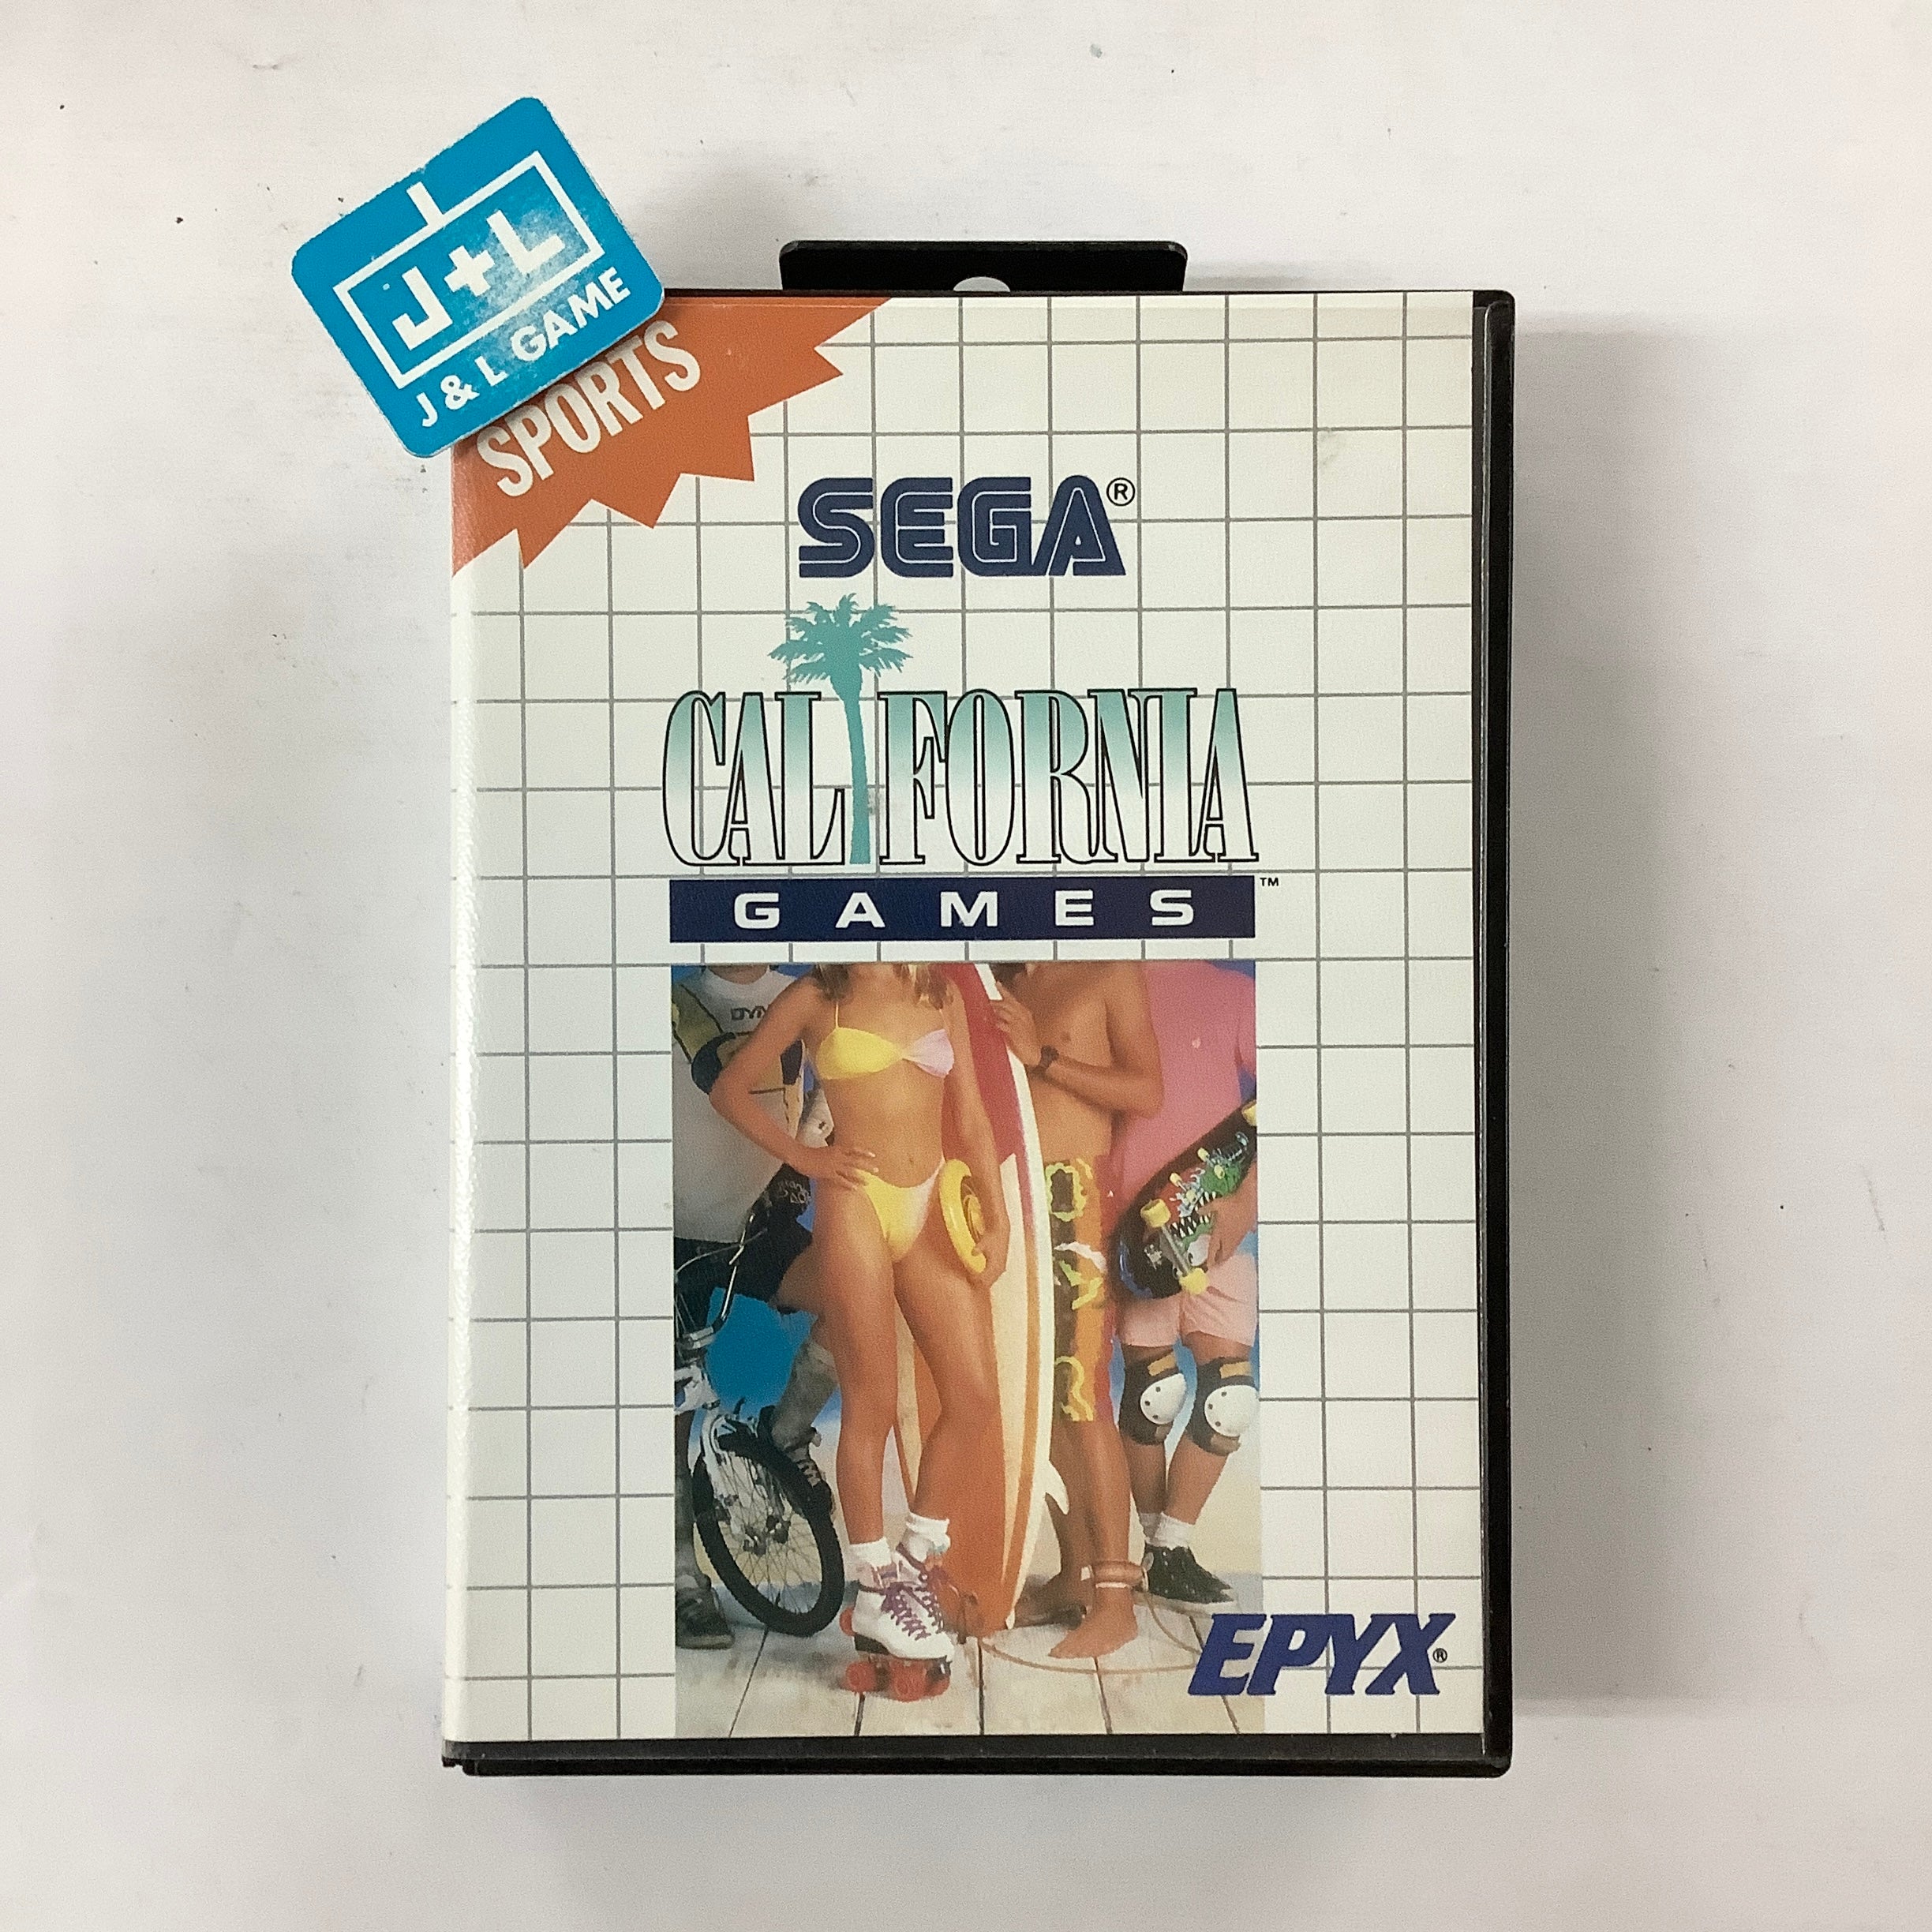 California Games - SEGA Master System [Pre-Owned] Video Games Sega   